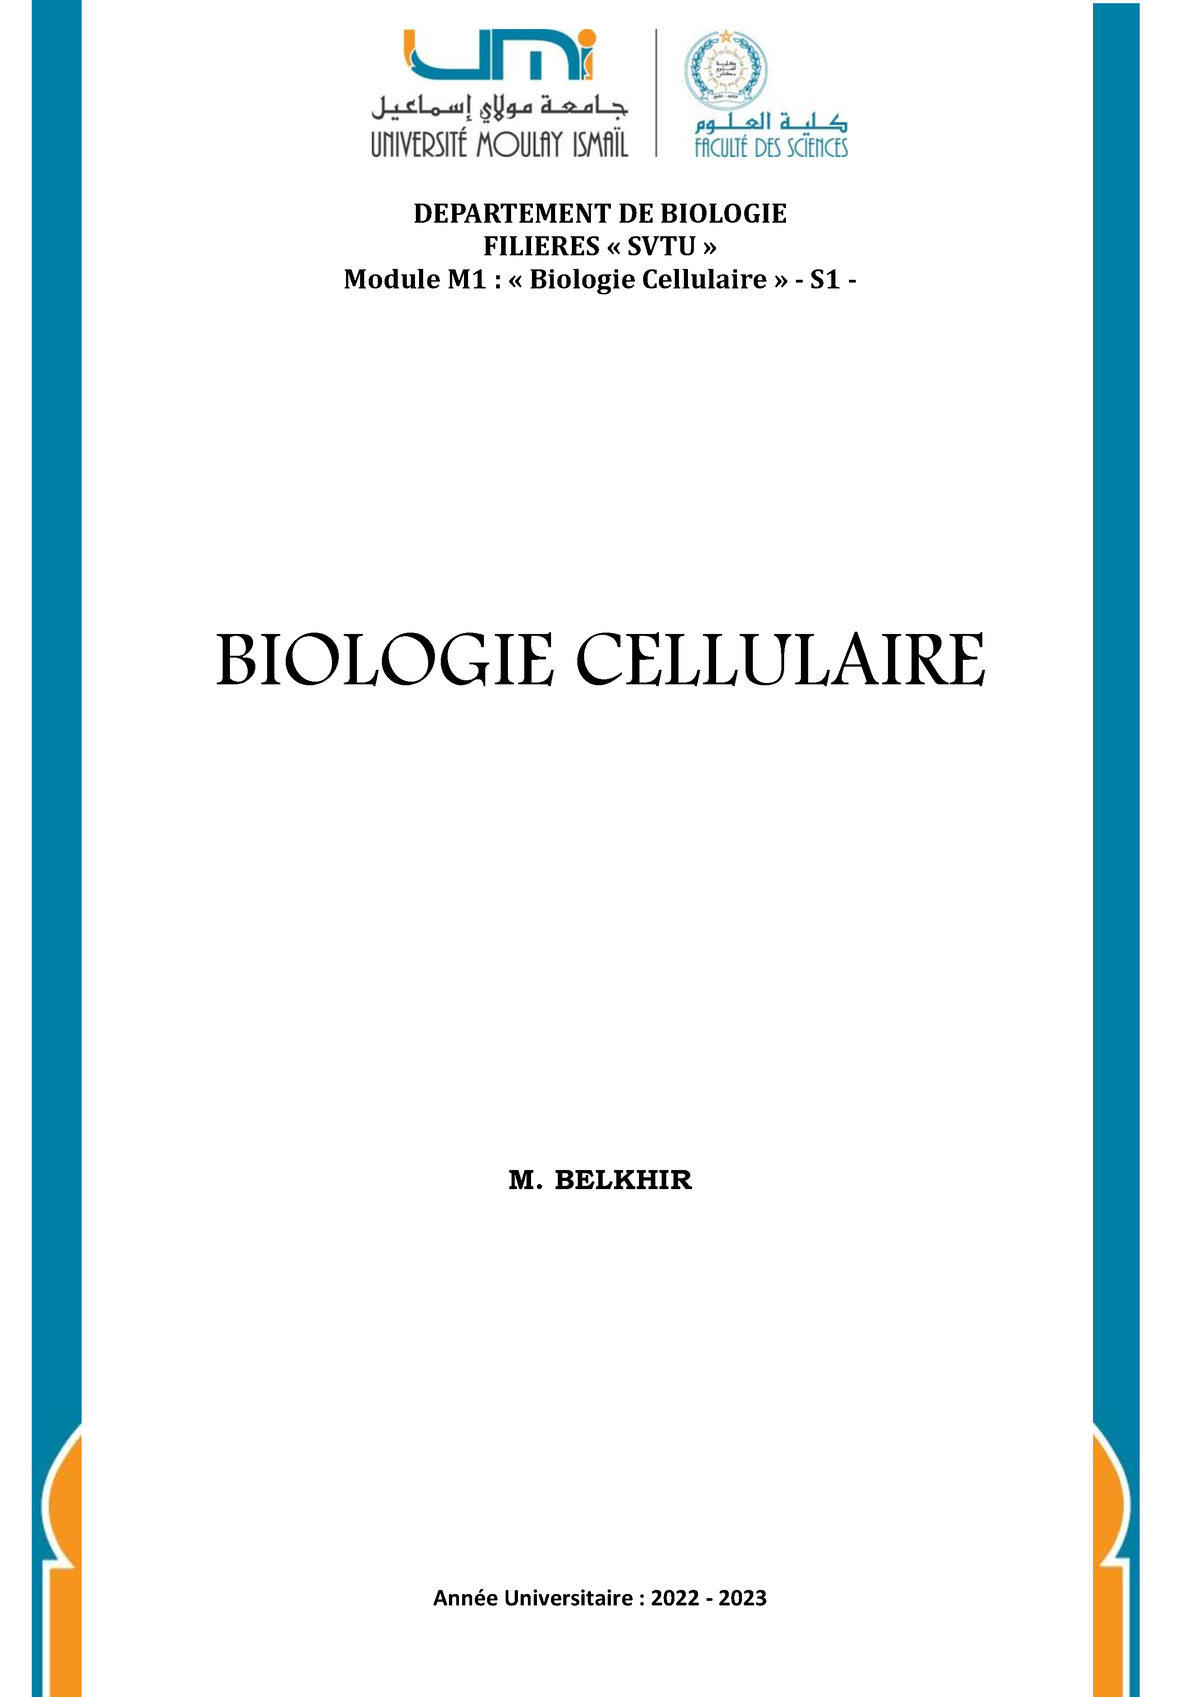 Biologie cellulaire: Cours Biologie cellulaire Partie I - DEPARTEMENT ...